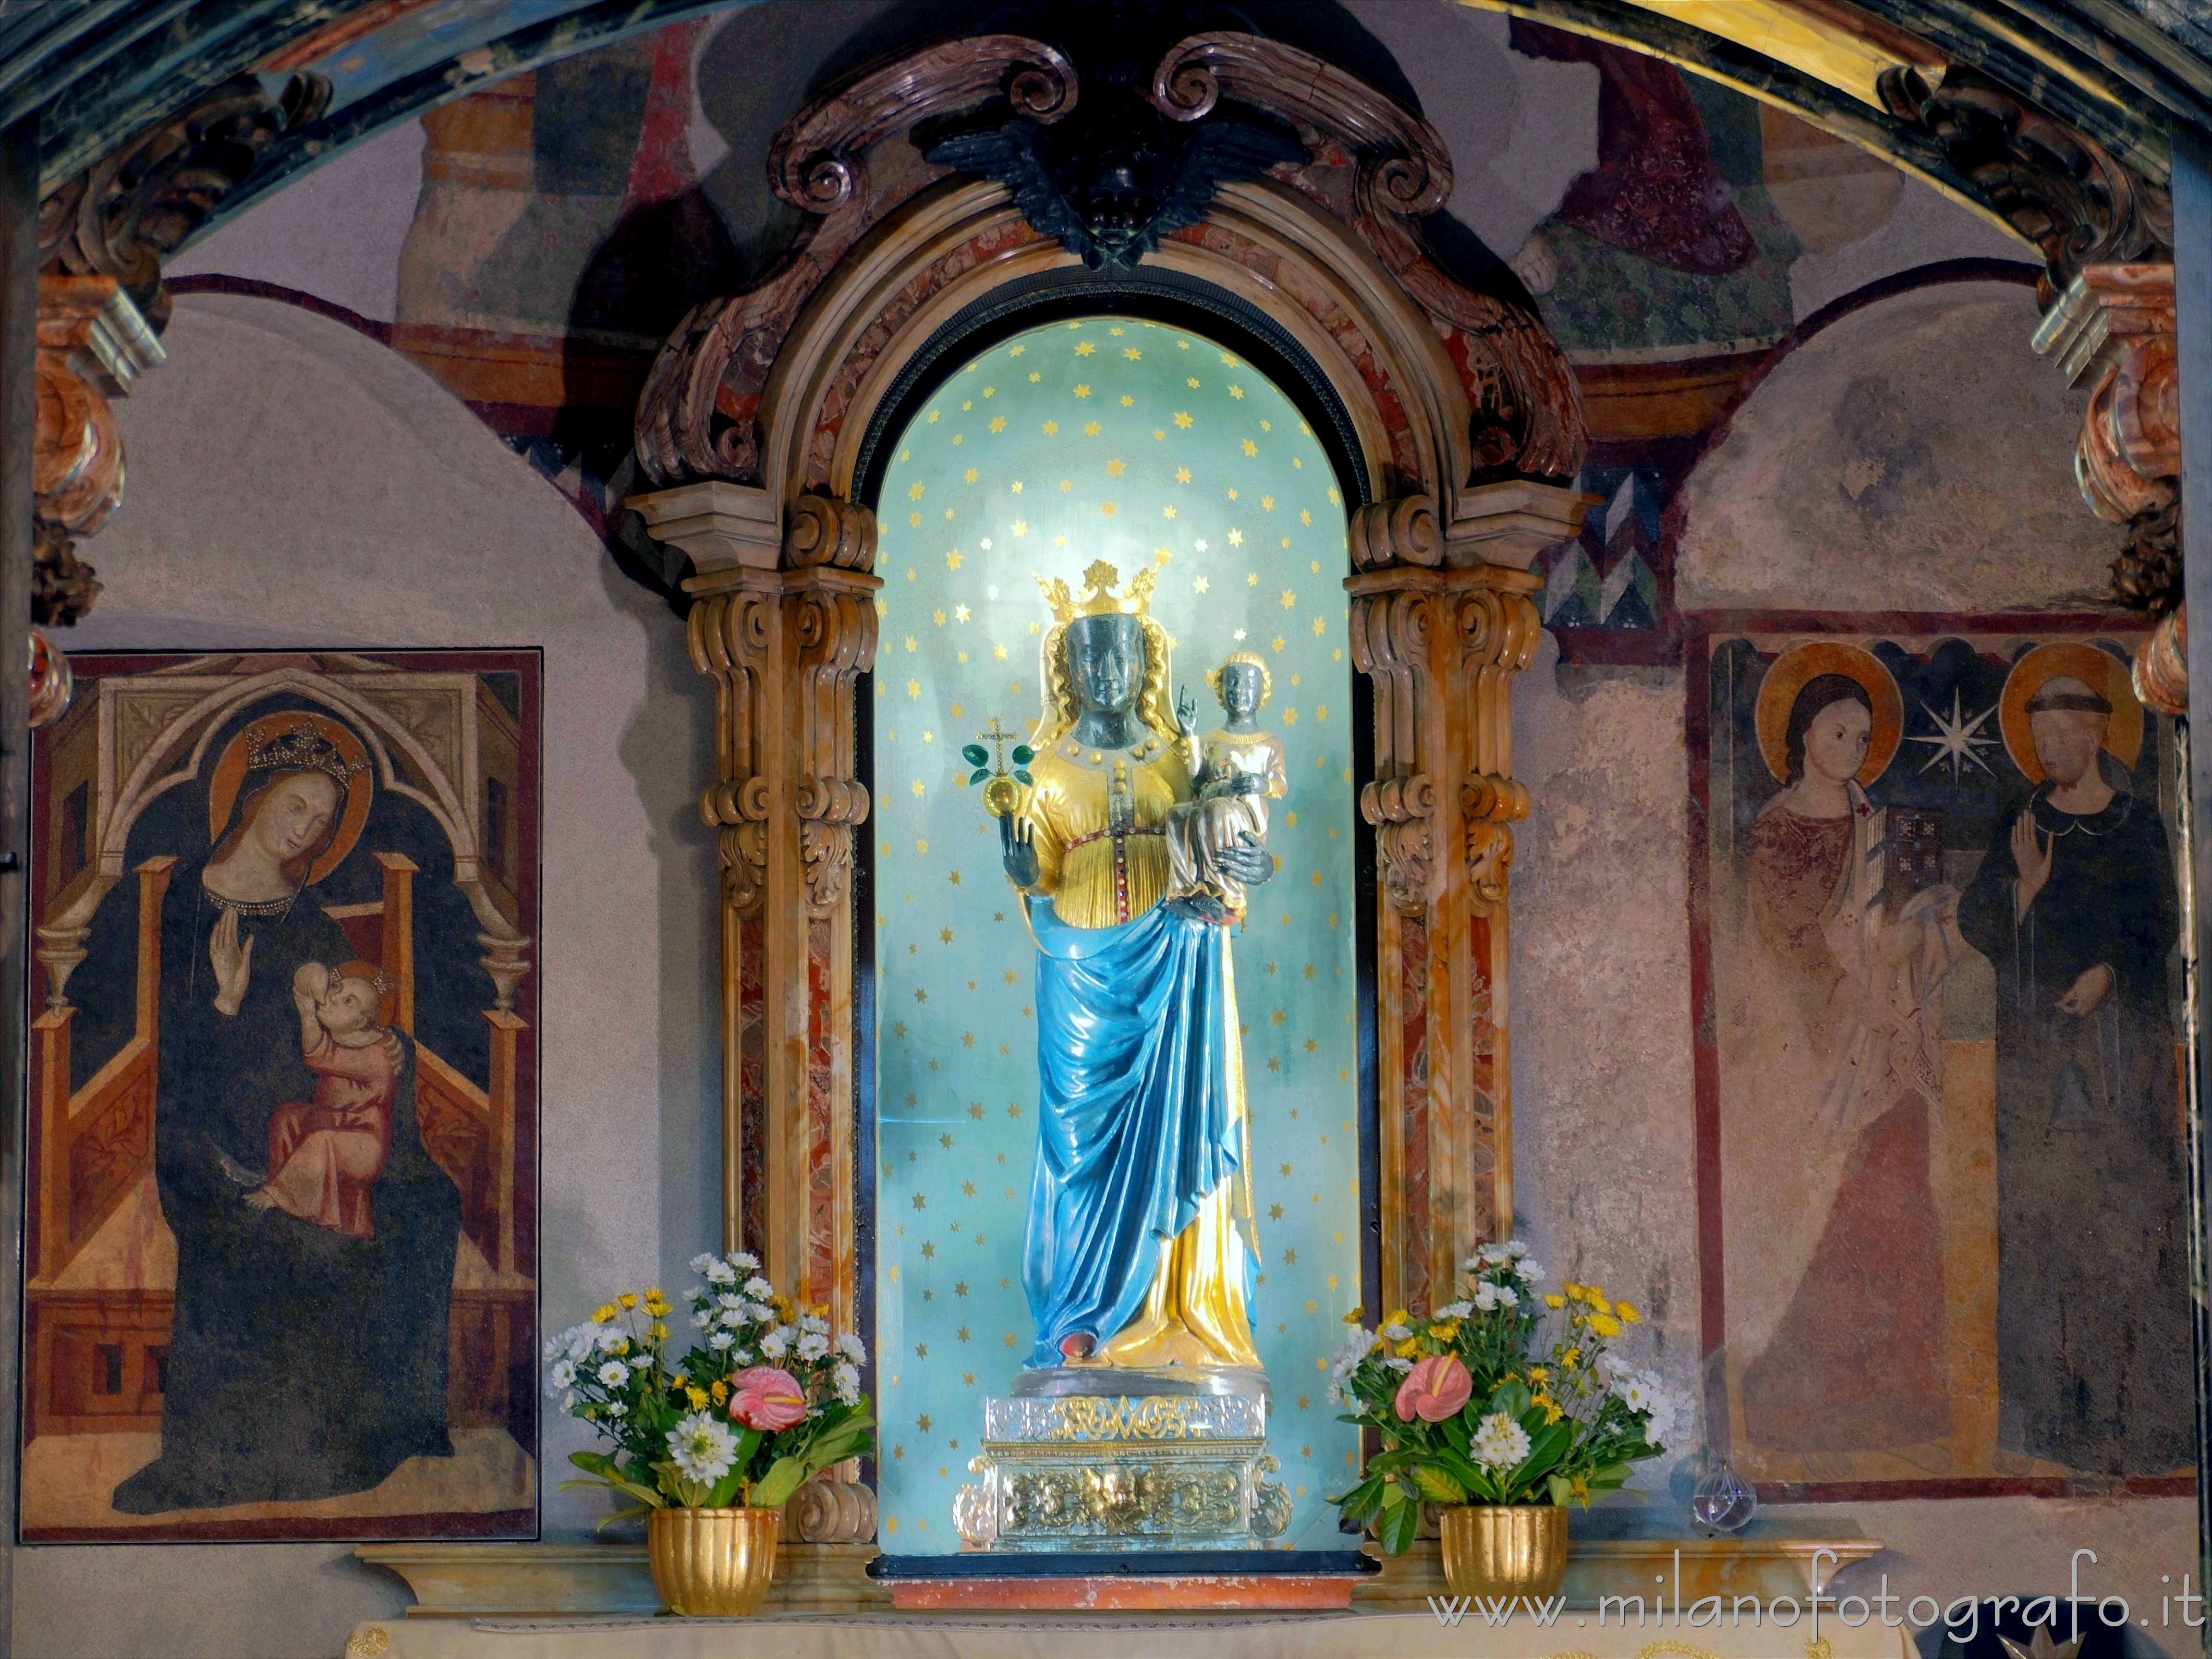 Biella: Statua della Madonna Nera nel sacello del Santuario di Oropa  - Biella